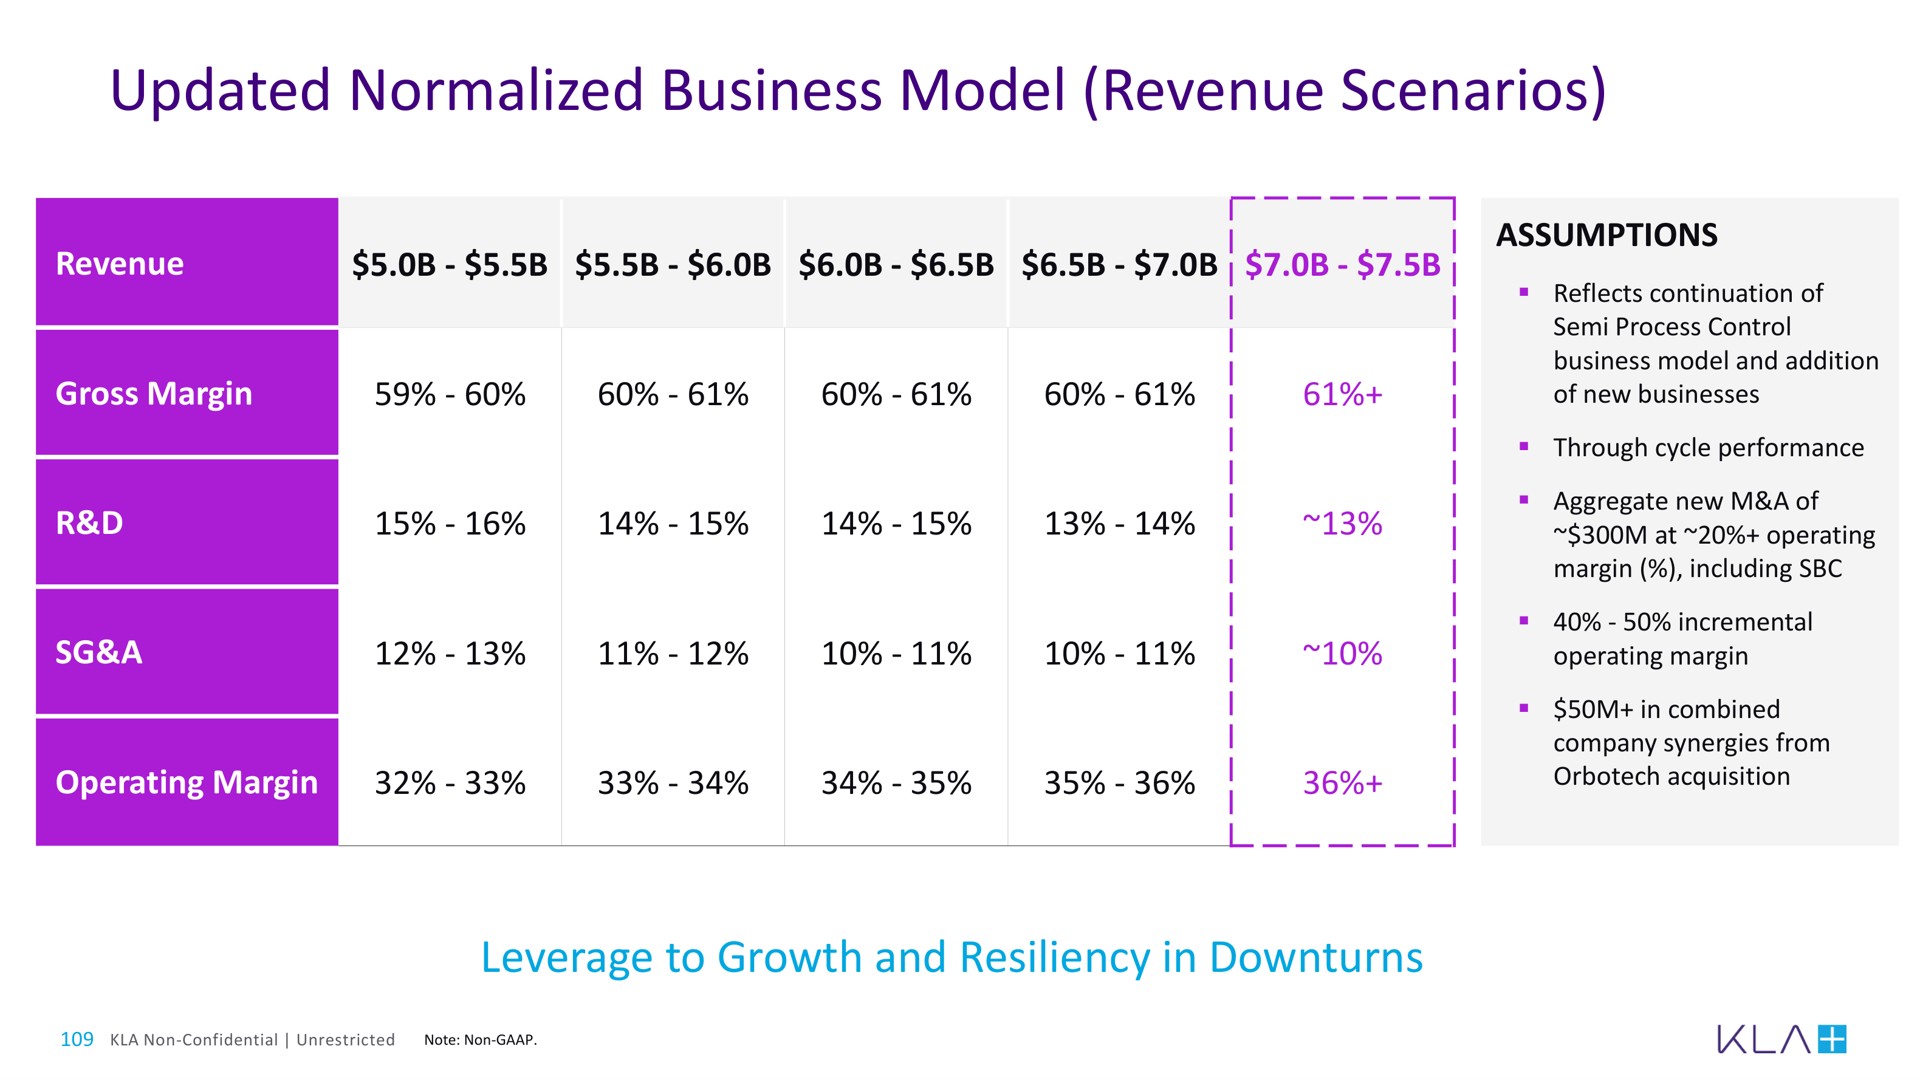 updated normalized business model revenue scenarios | KLA